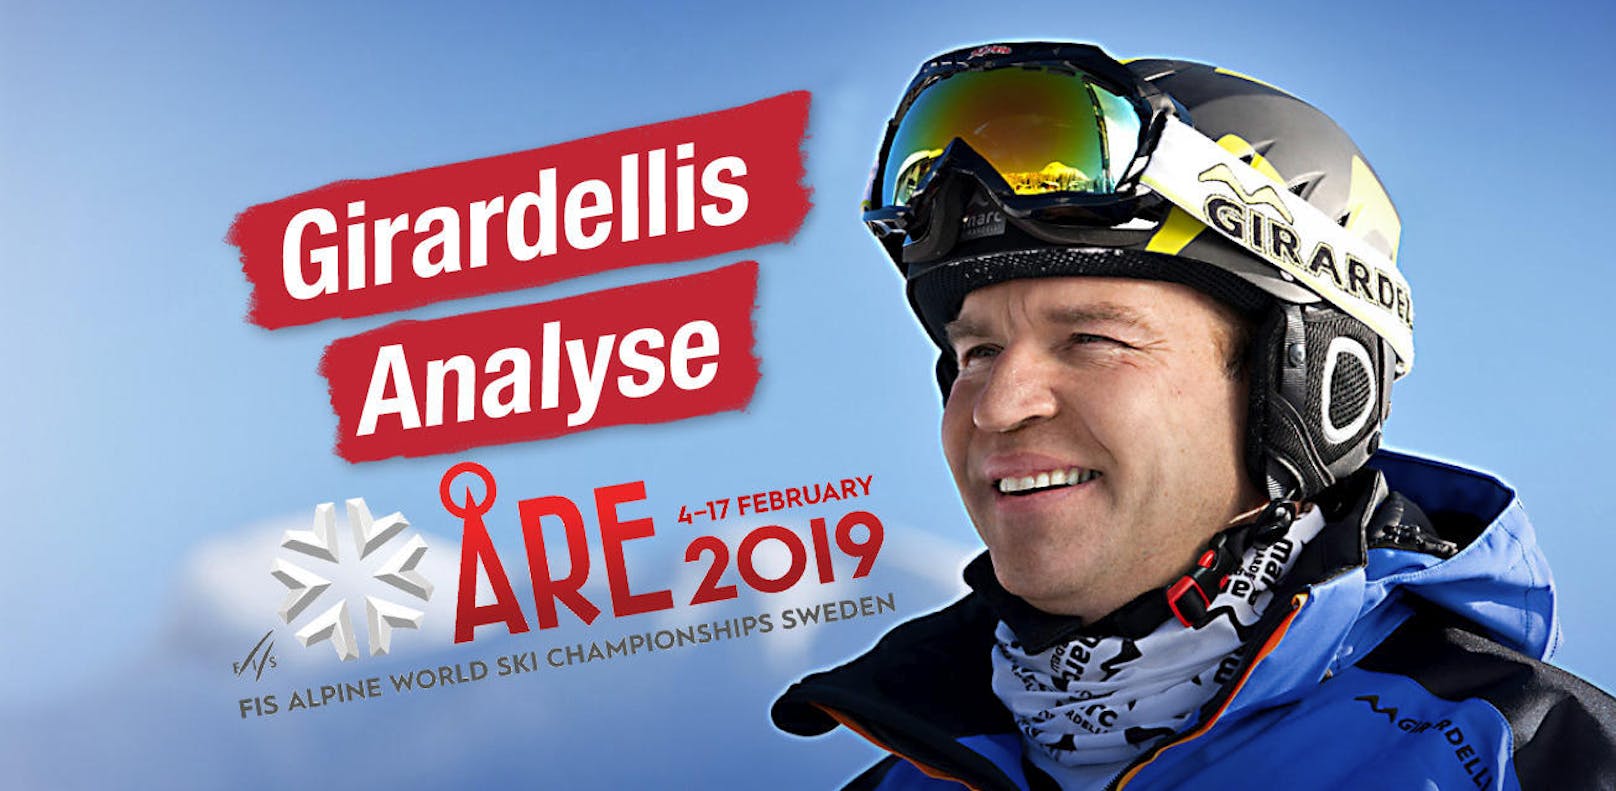 "Heute"-Experte Marc Girardelli tippt für uns die Ski-WM in Aare. Wer holt Gold, wer geht leer aus? Klicken Sie sich durch unsere Diashow!